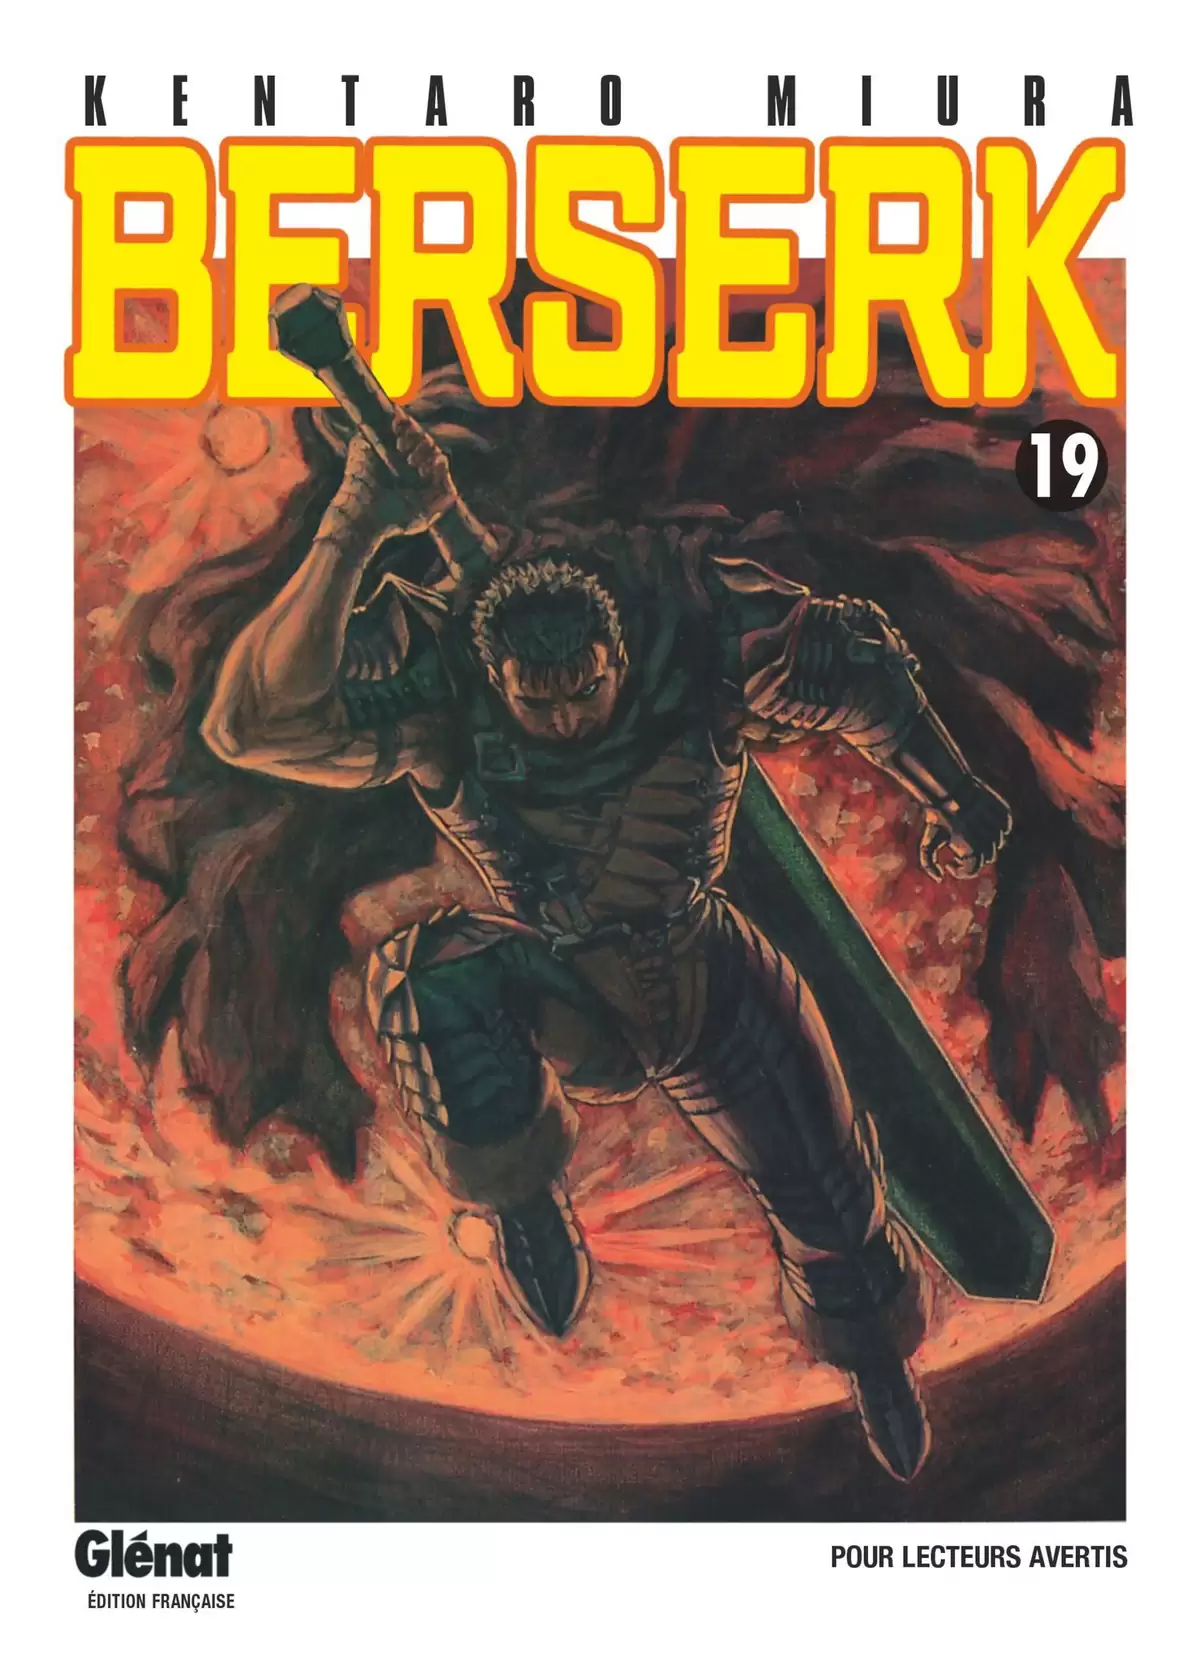 Berserk Volume 19 page 1